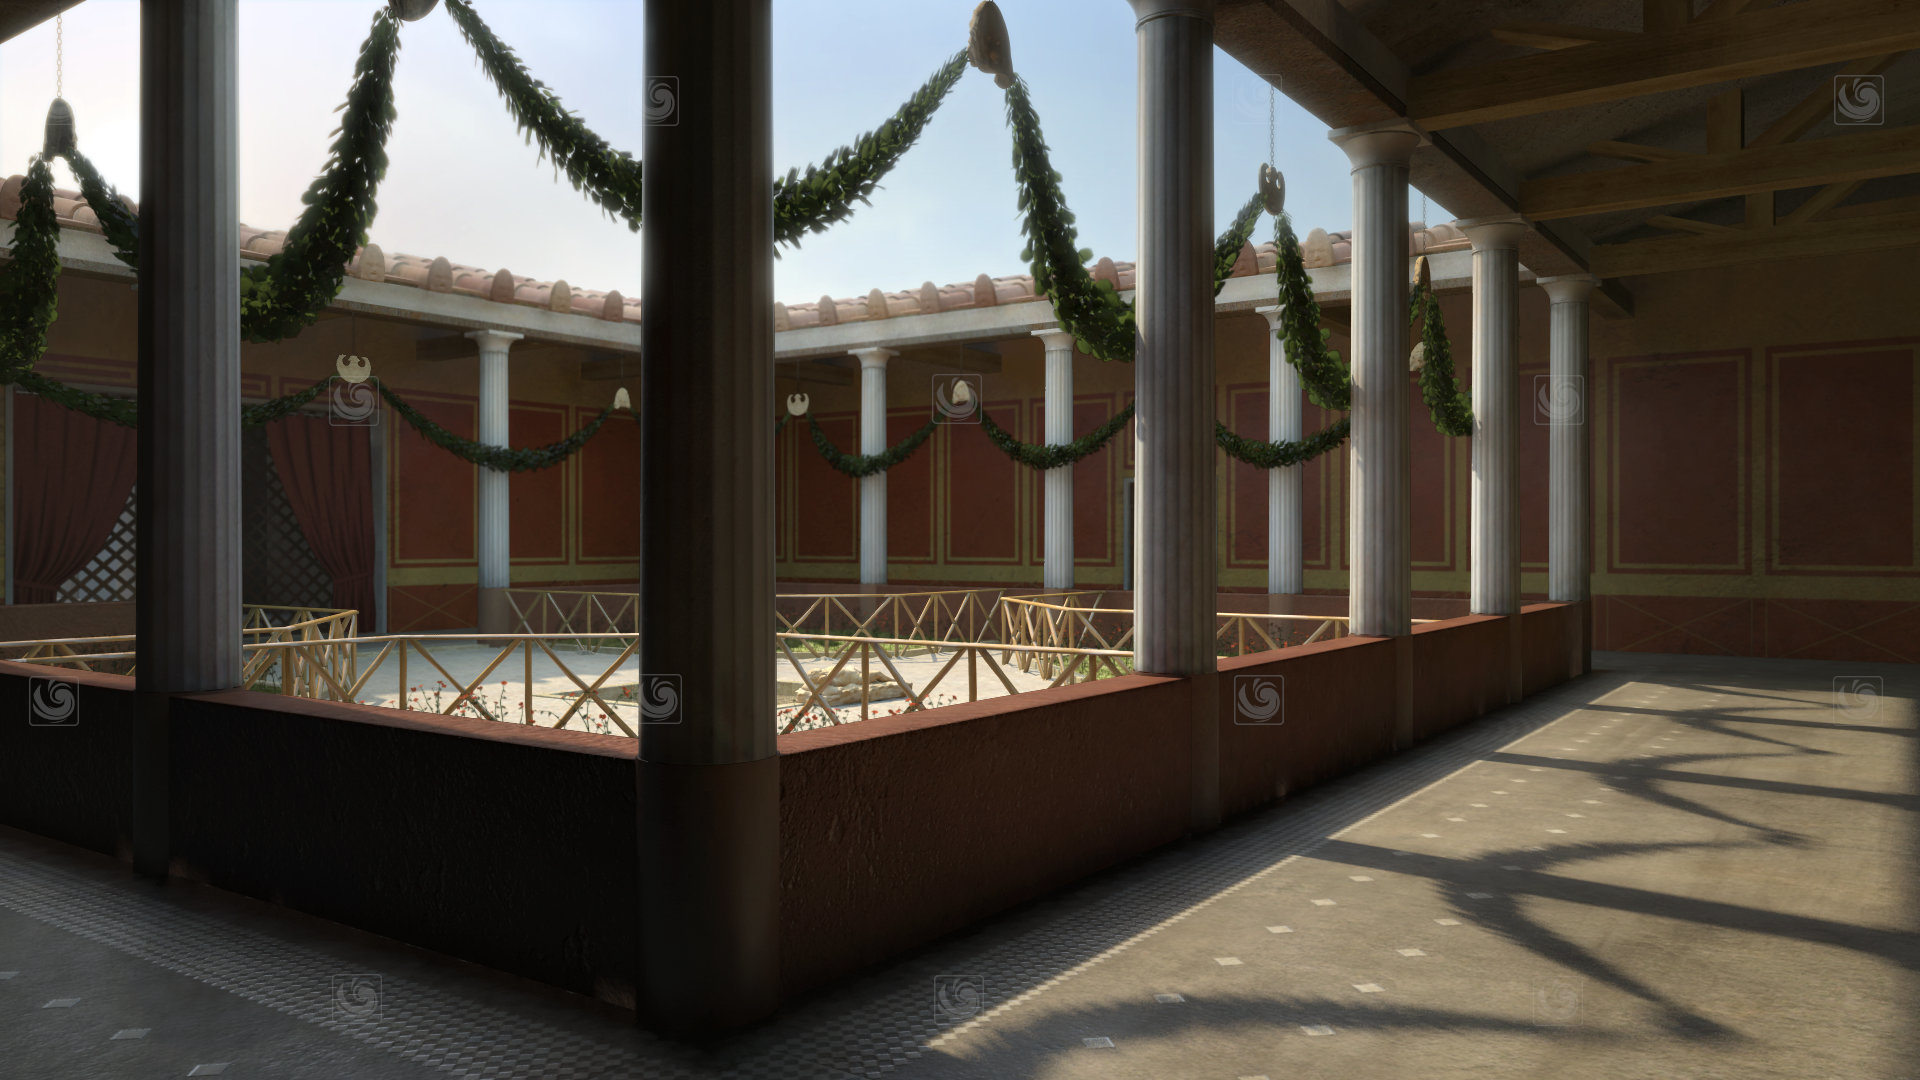 Fotograma de animación 3D mostrando una vista subjetiva de un patio romano